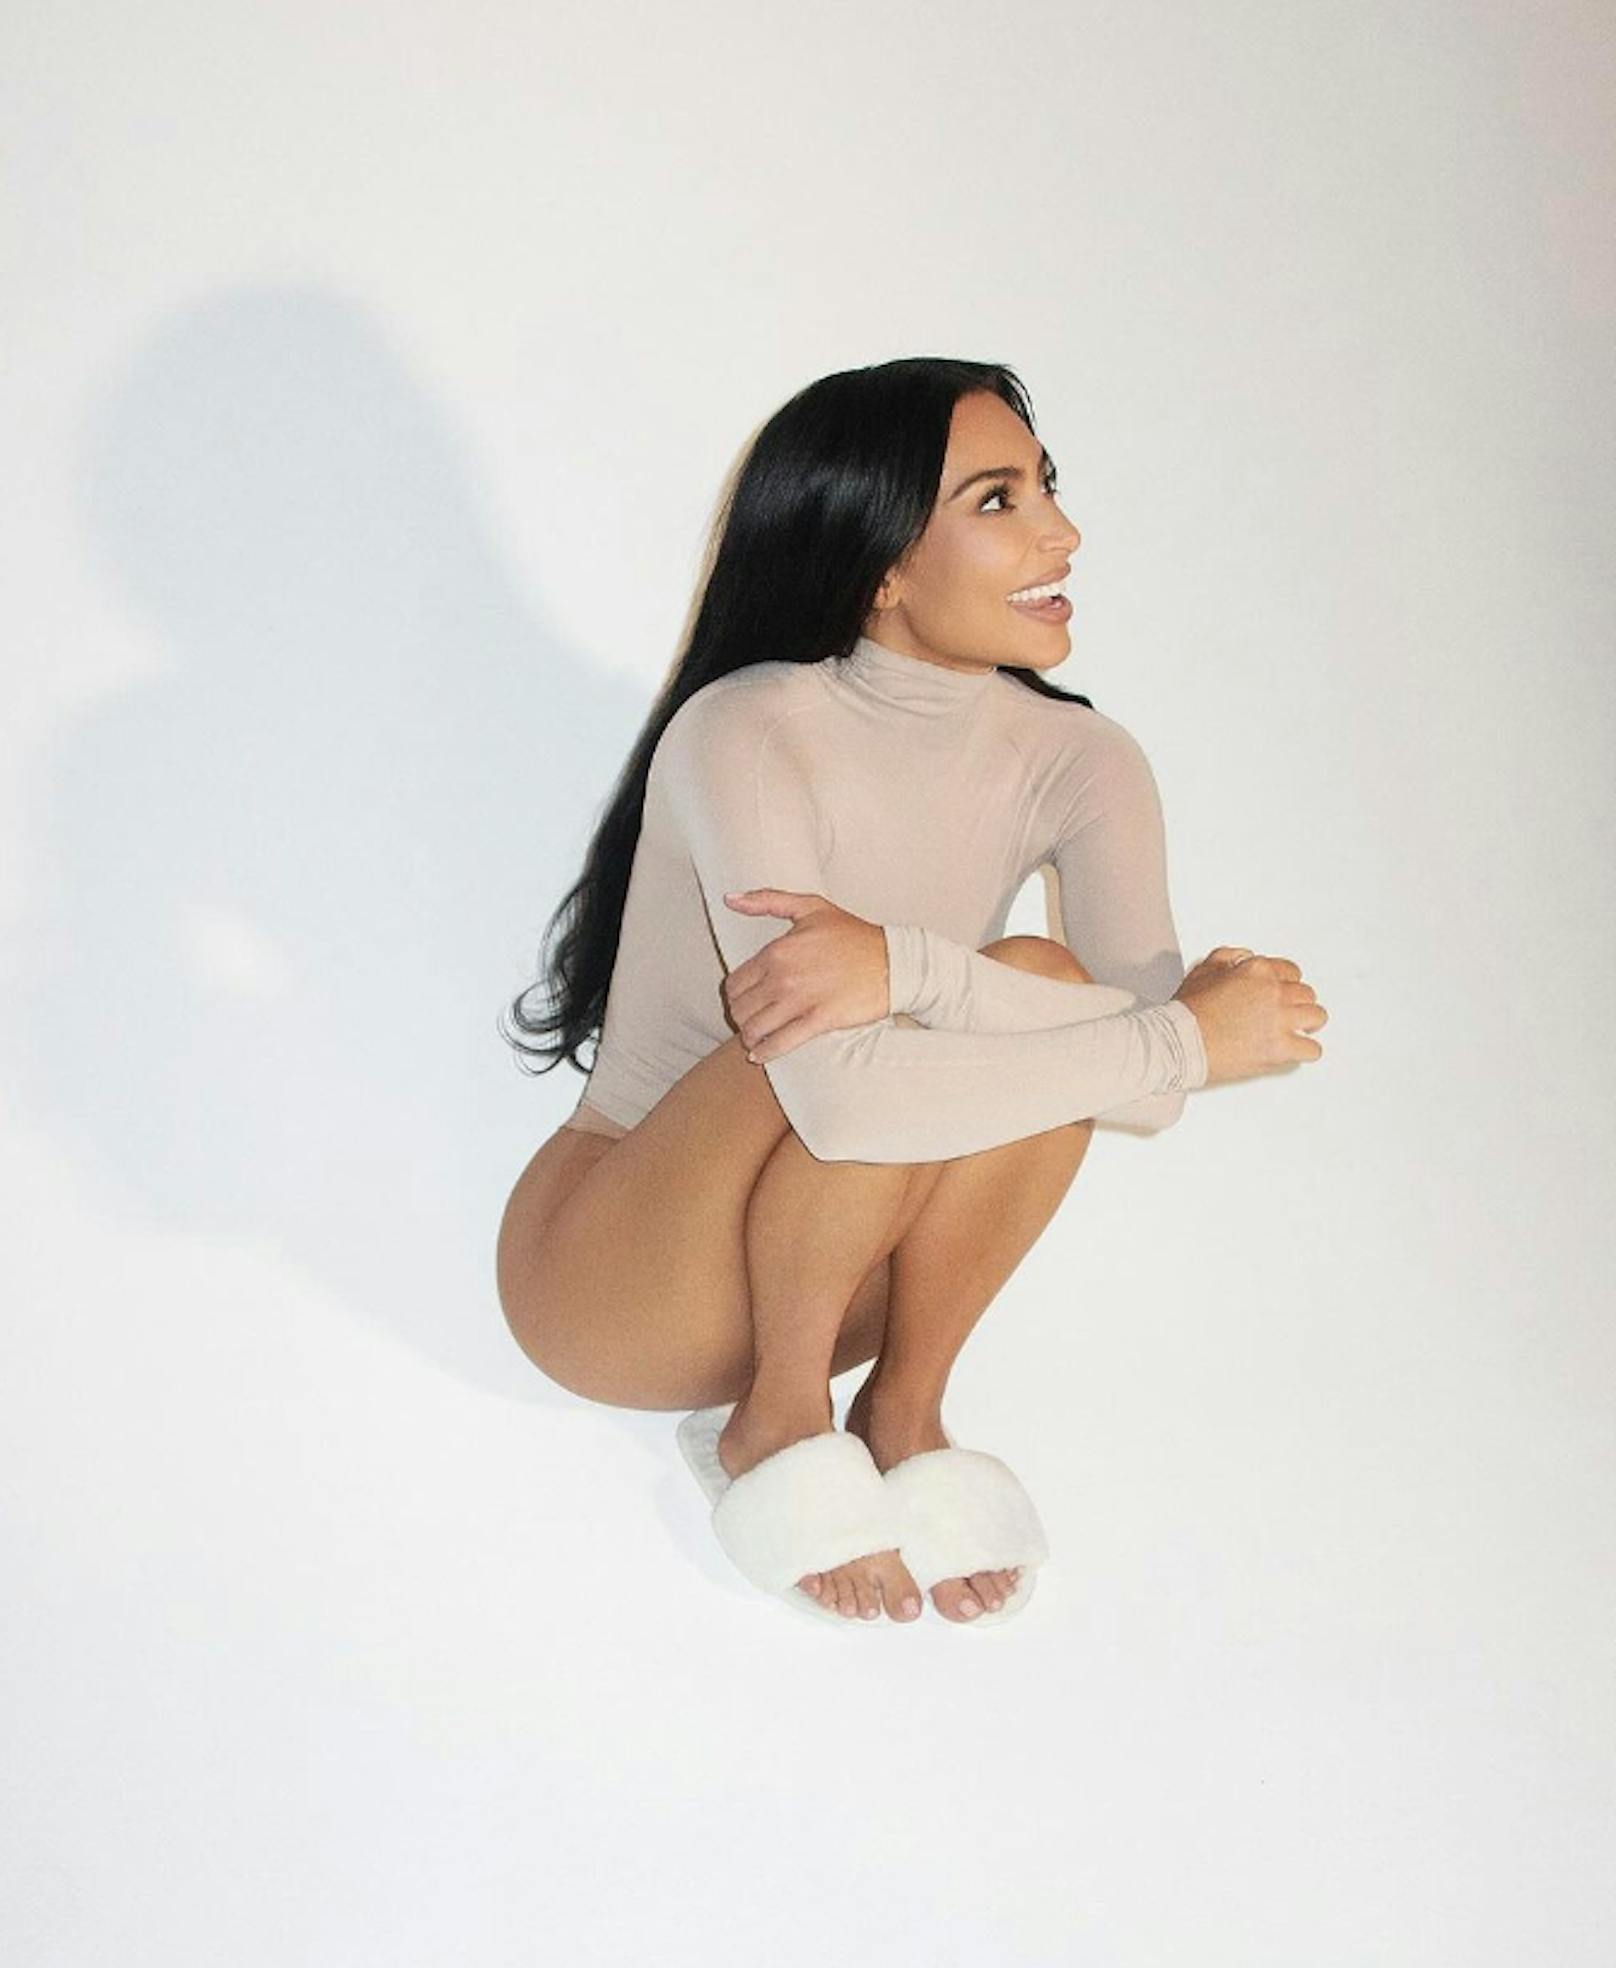 Auf einem neuen Bild hat Kim Kardashian oben einen Rollkragen-Pullover an - unten dafür gar nichts.